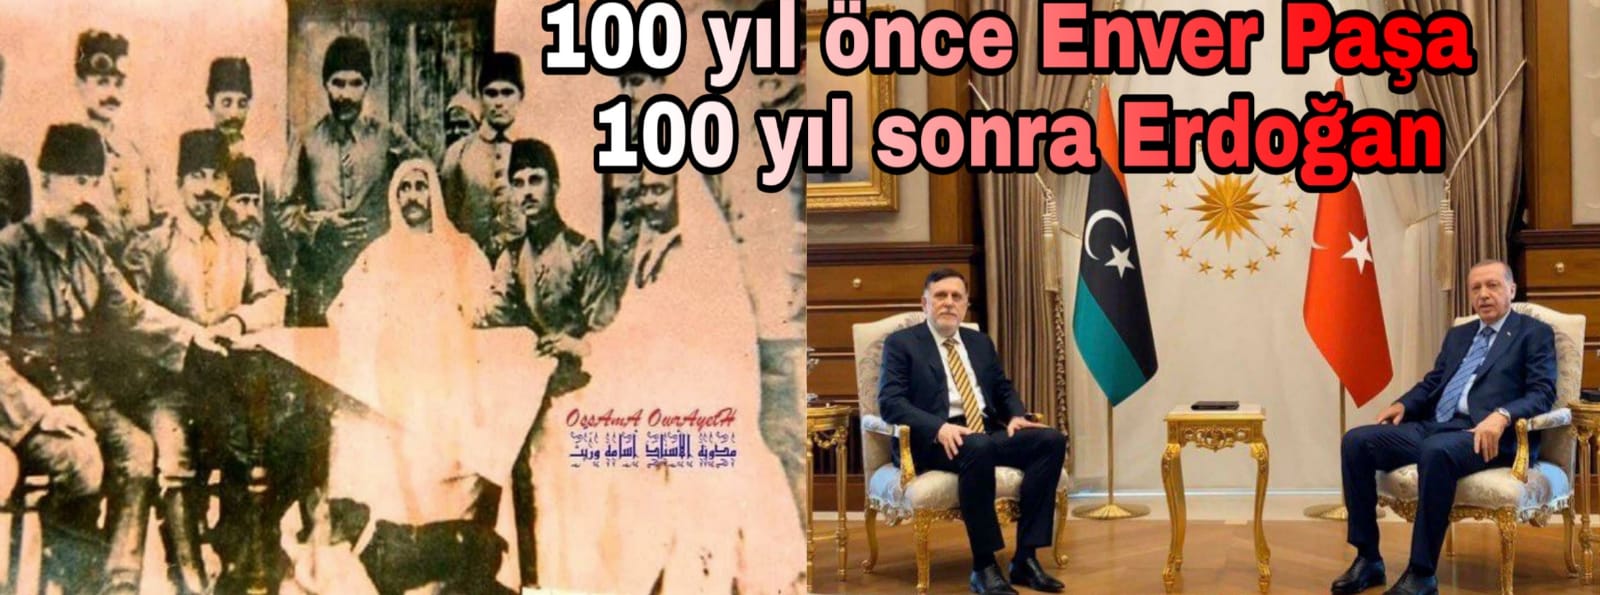 100 yıl önce Enver Paşa 100 yıl sonra Erdoğan